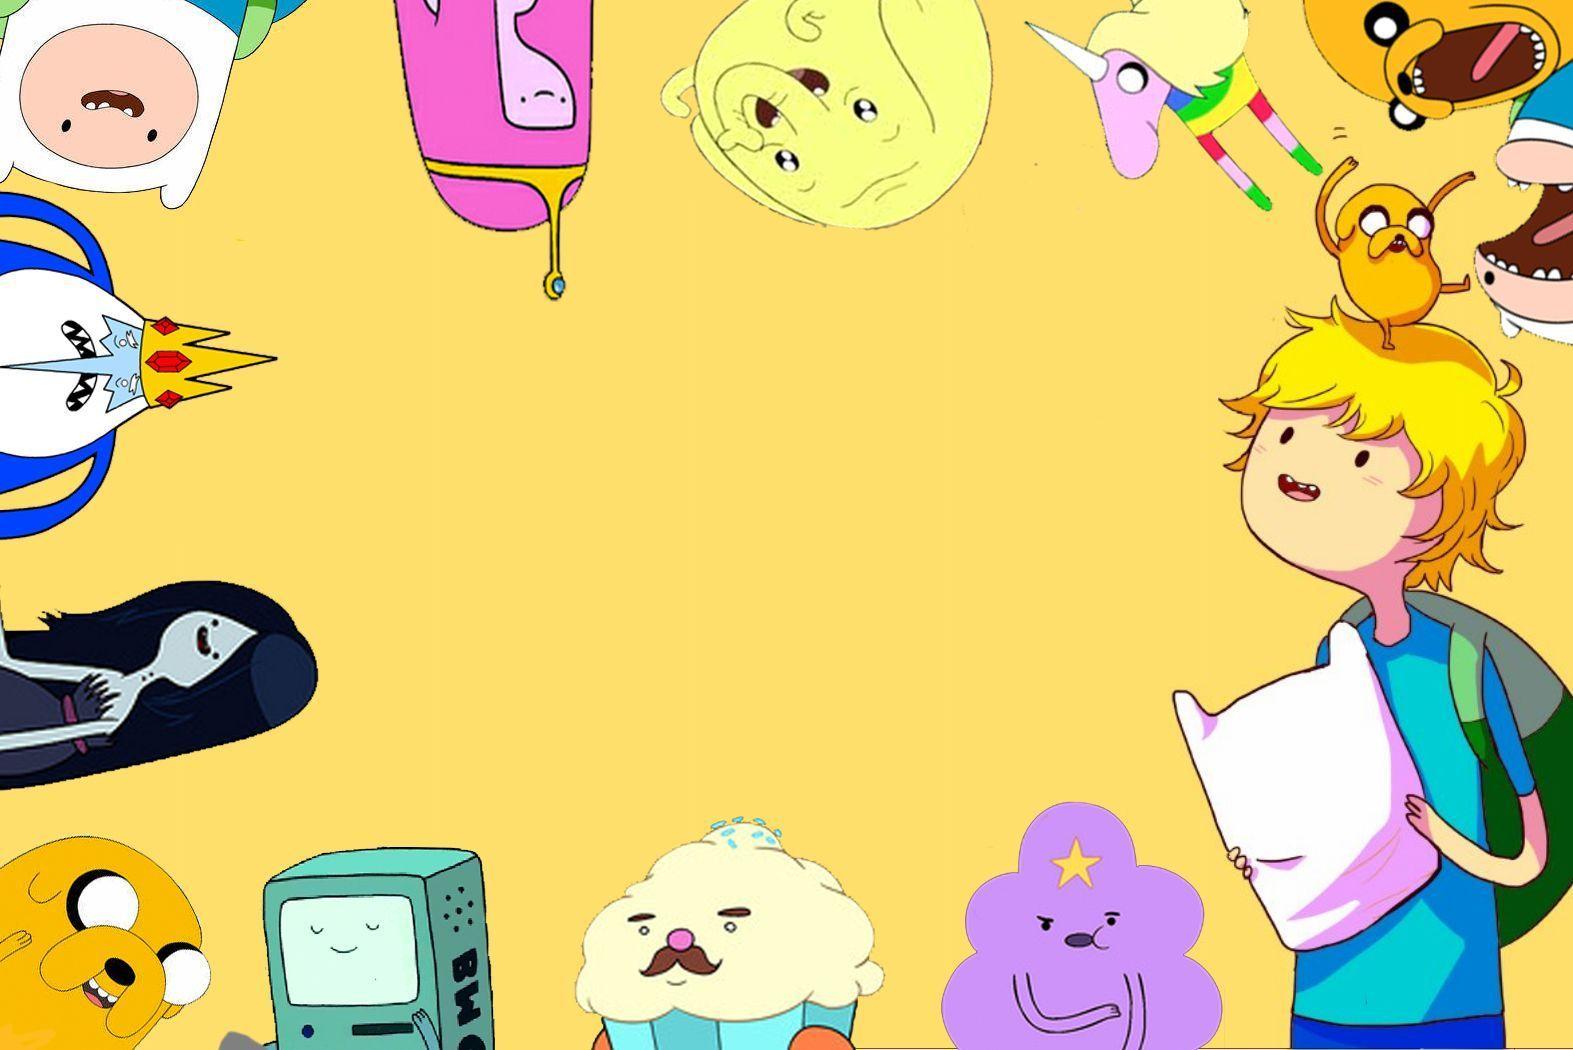 76+] Adventure Time Wallpapers - WallpaperSafari